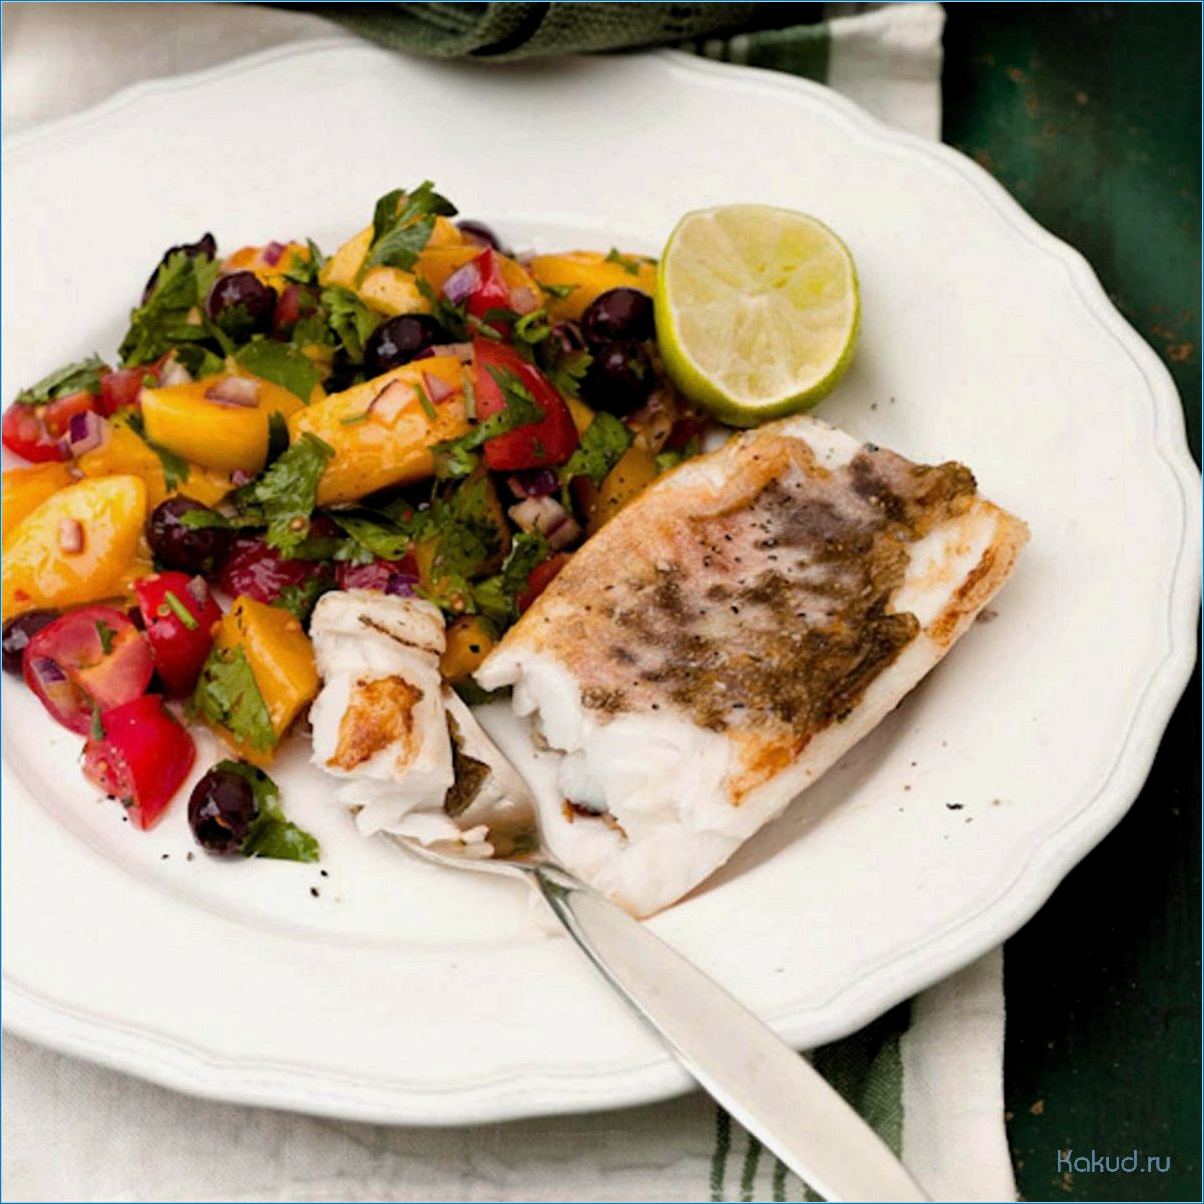 Разнообразные рецепты блюд из свежей рыбы конгрио для настоящих гурманов